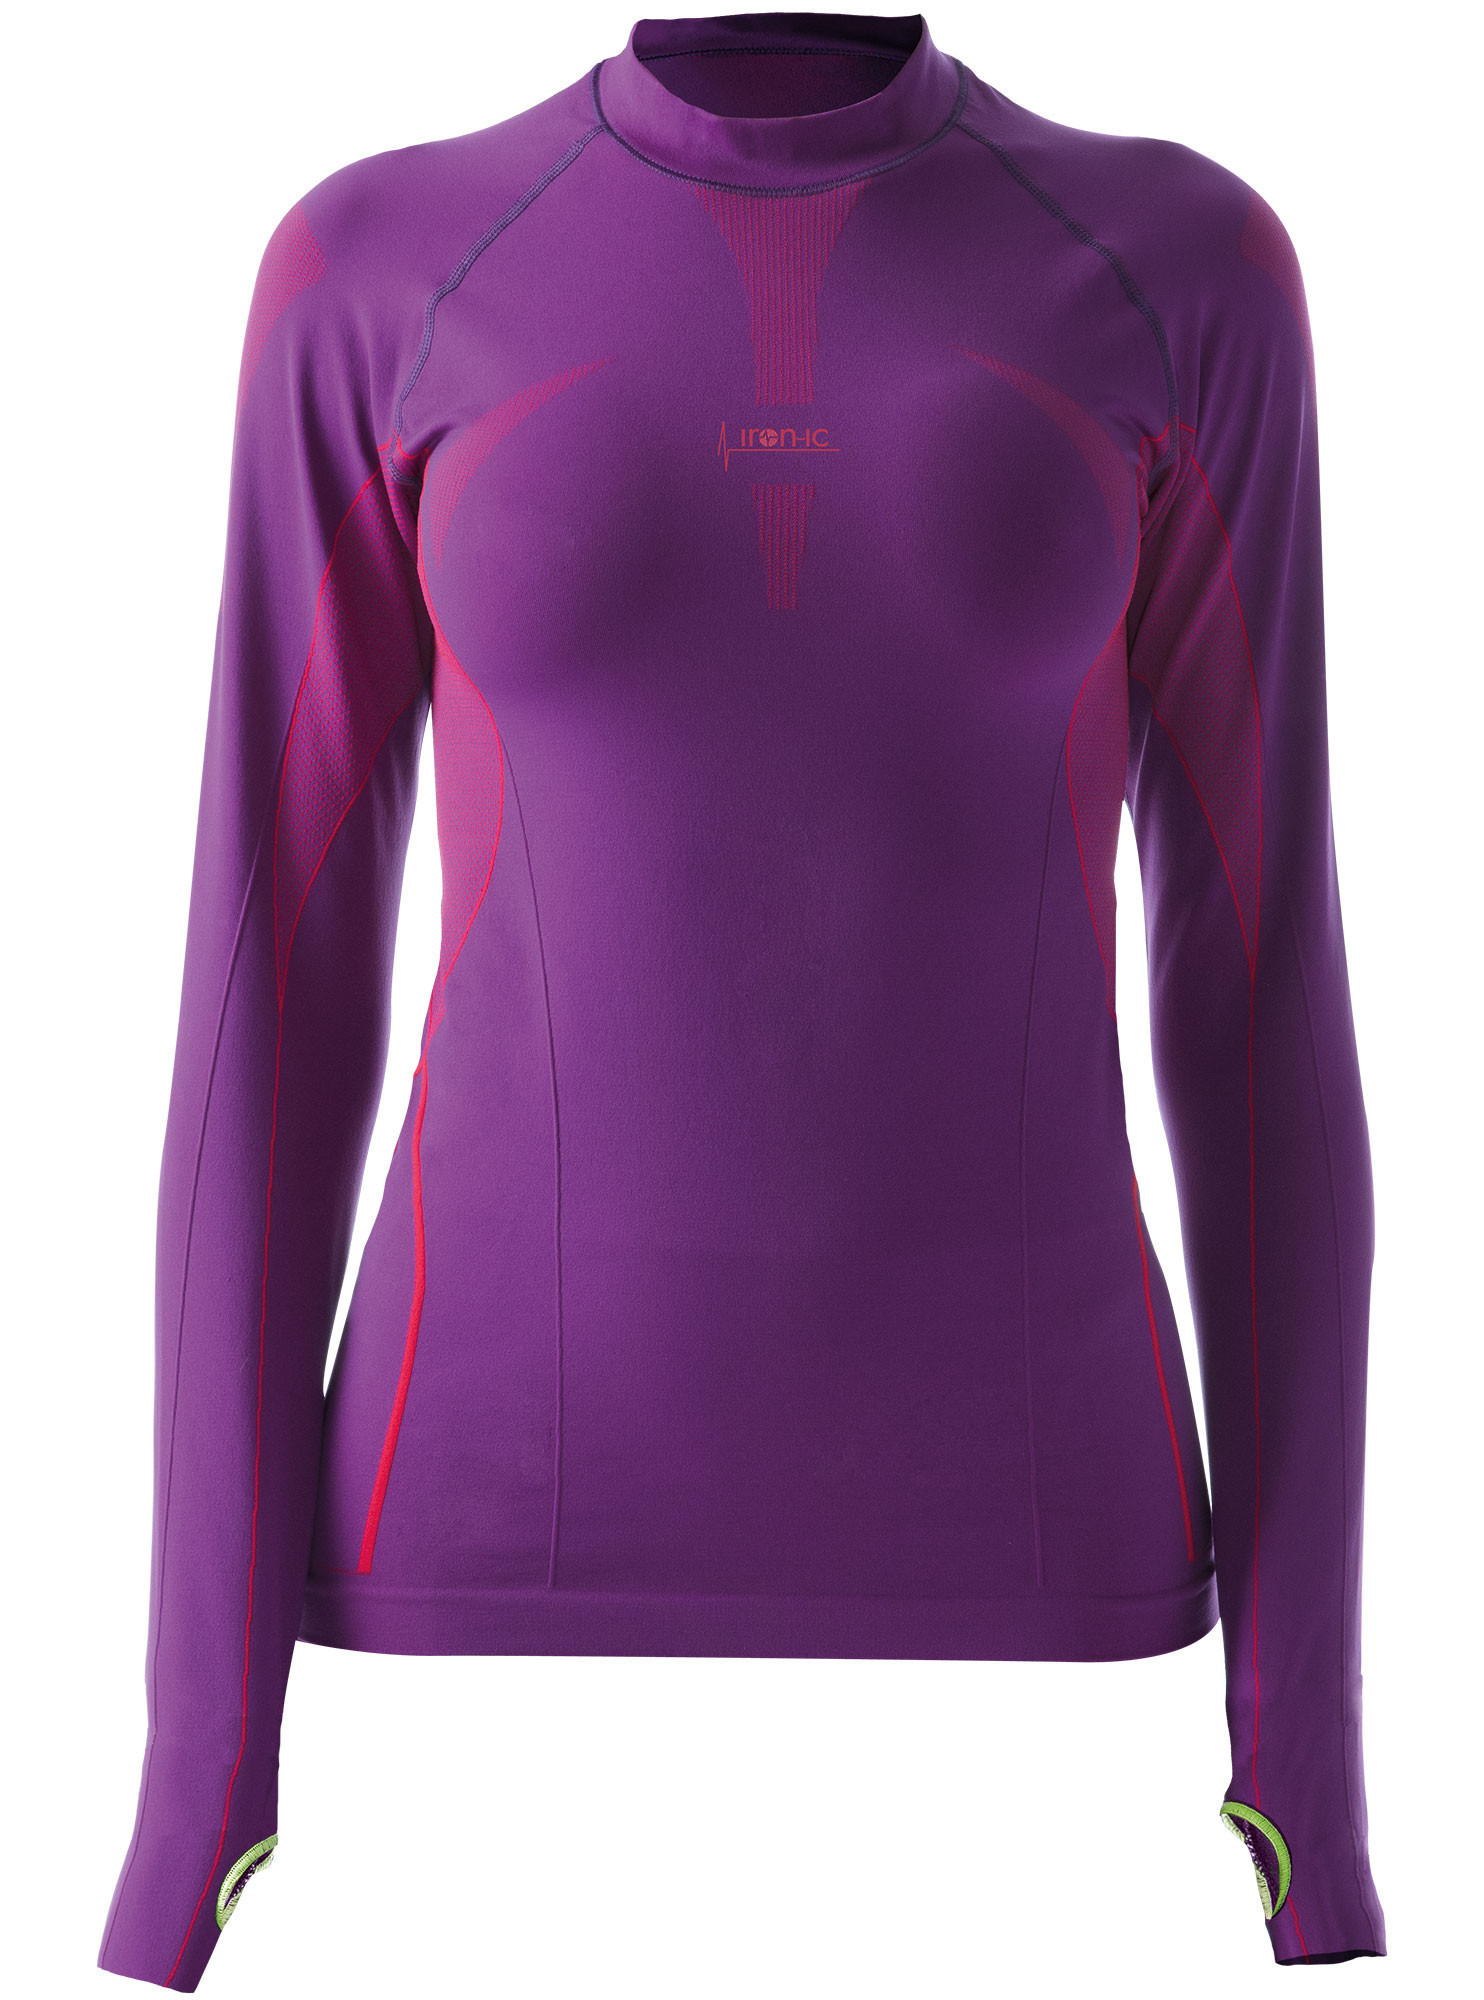 Dámské sportovní tričko s dlouhým rukávem fialová Barva: Violet model 15131932 Velikost: L/XL - IRON-IC